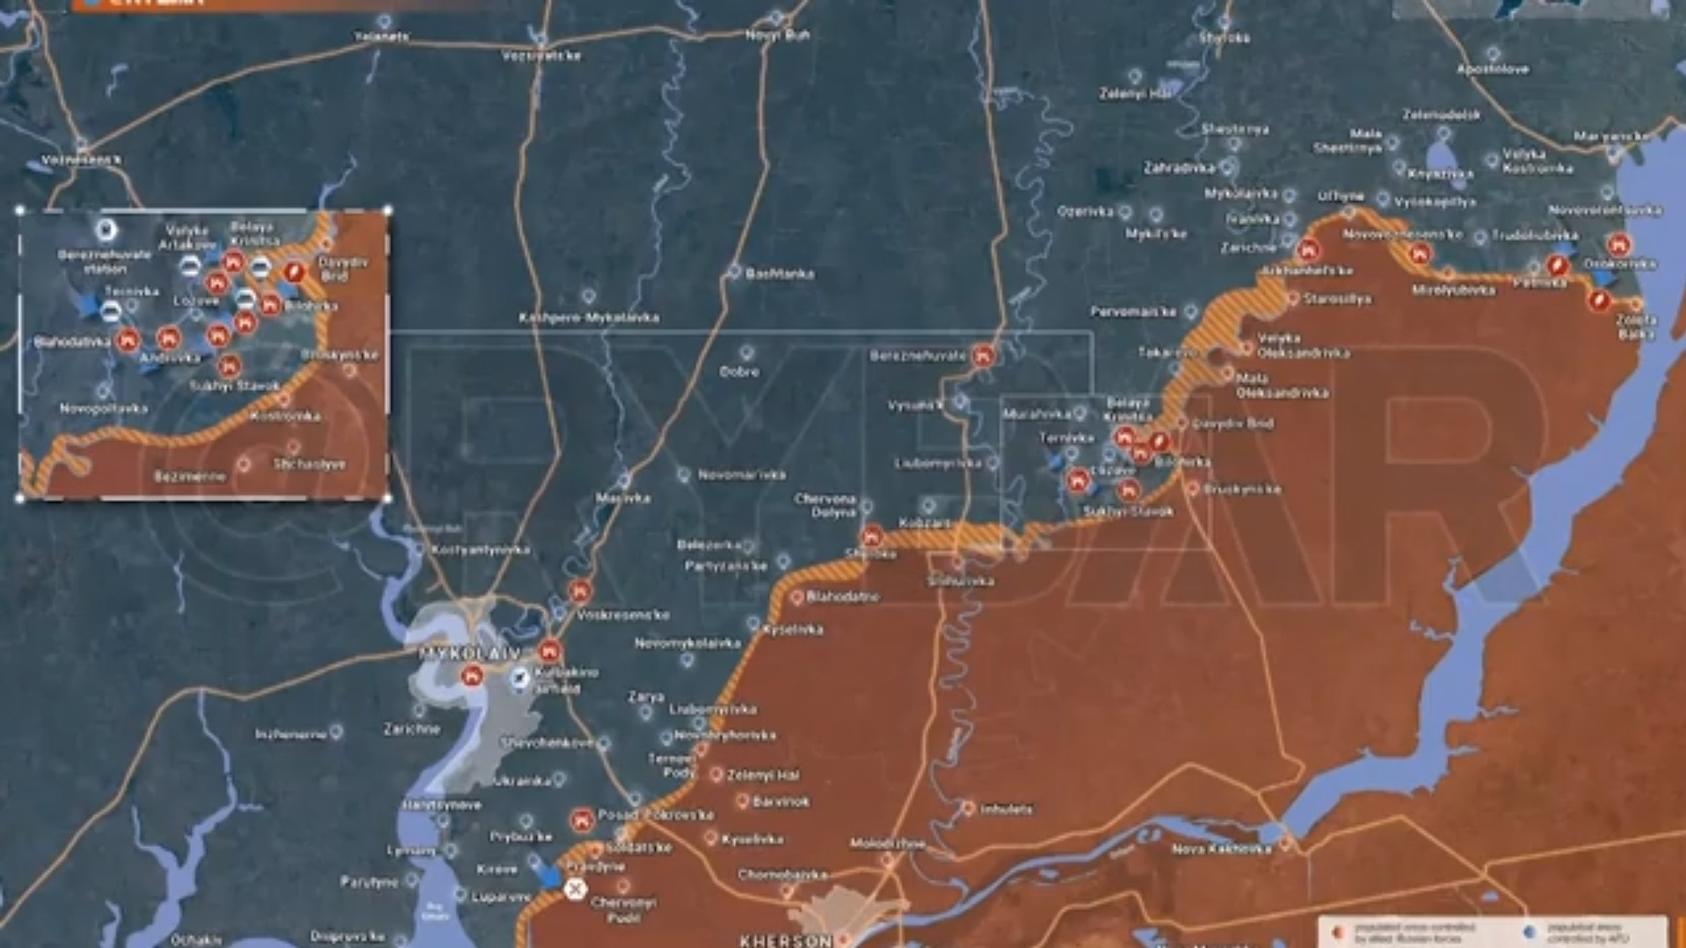 ukrainer-holen-sich-ihr-land-zuruck-karte-zeigt-massiven-russen-ruckzug